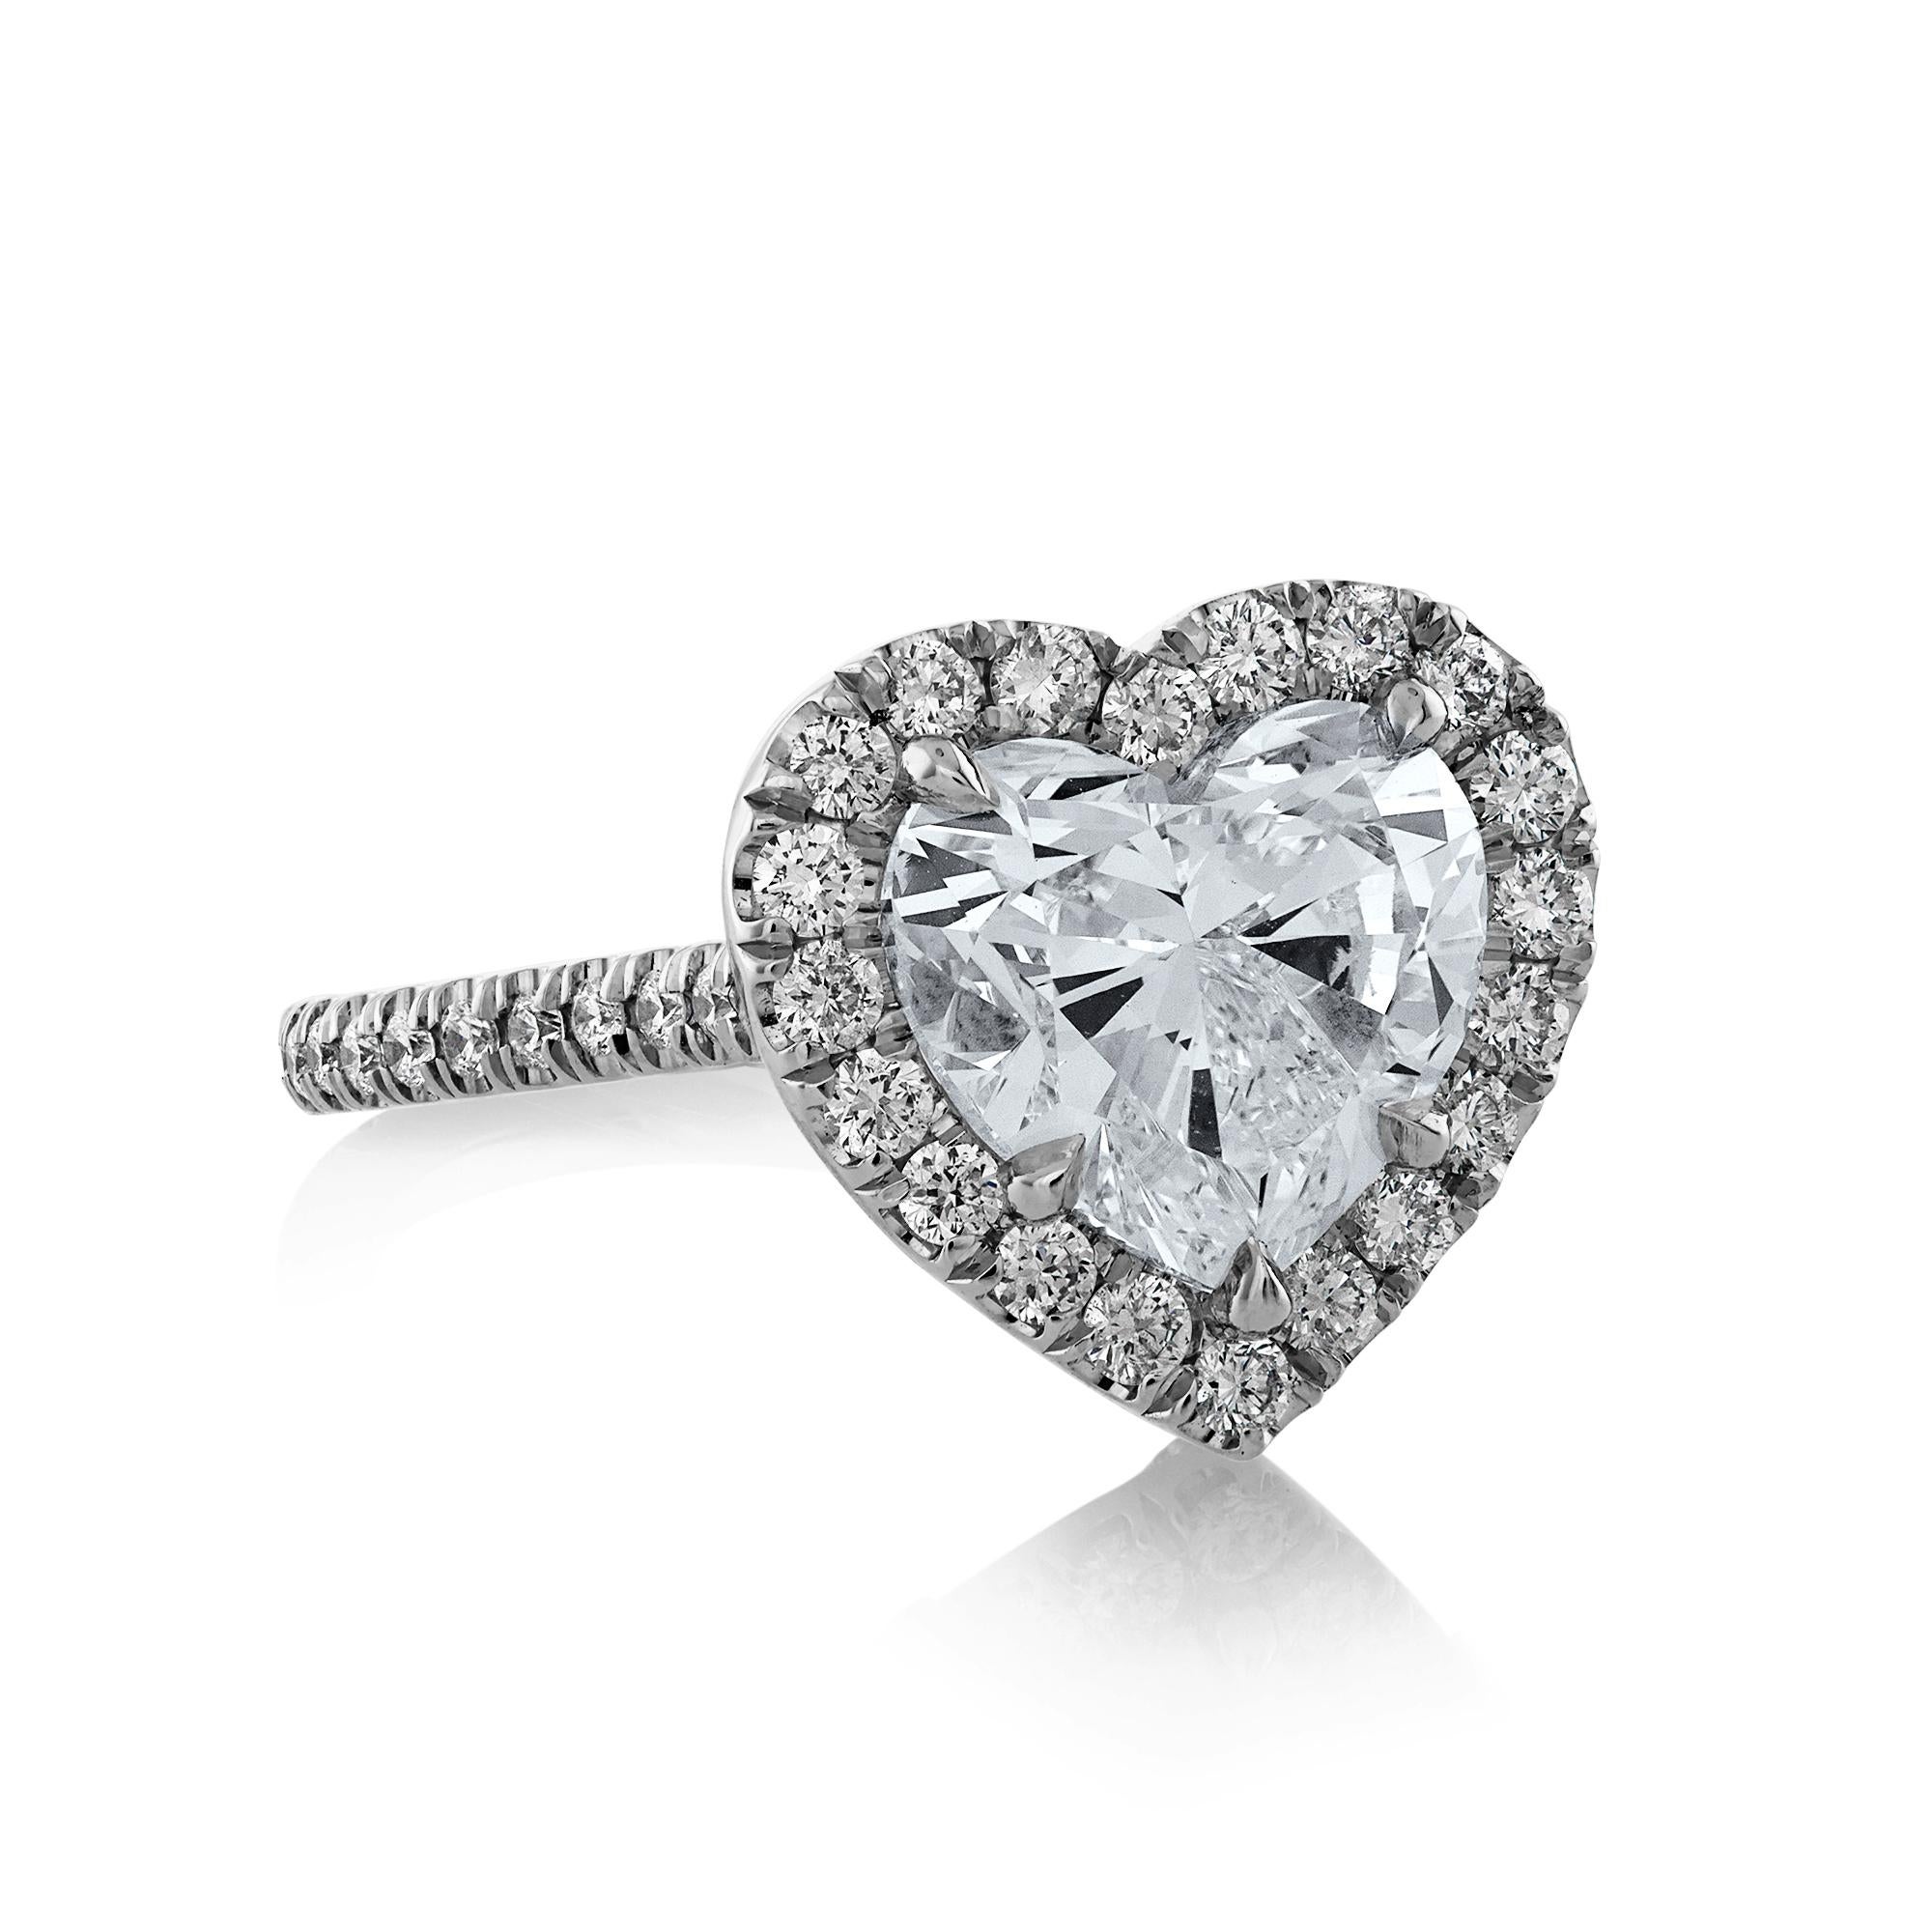 Es gibt nichts ROMANTISCHERES als diesen exquisiten 3.91ctw Heart Shaped Diamond Platinum Engagement Ring!
Ein eisweißer, schlank modellierter HEART-Diamant steht im Mittelpunkt der Aufmerksamkeit. Dieser Diamant in jahrhundertealter Form, der Liebe